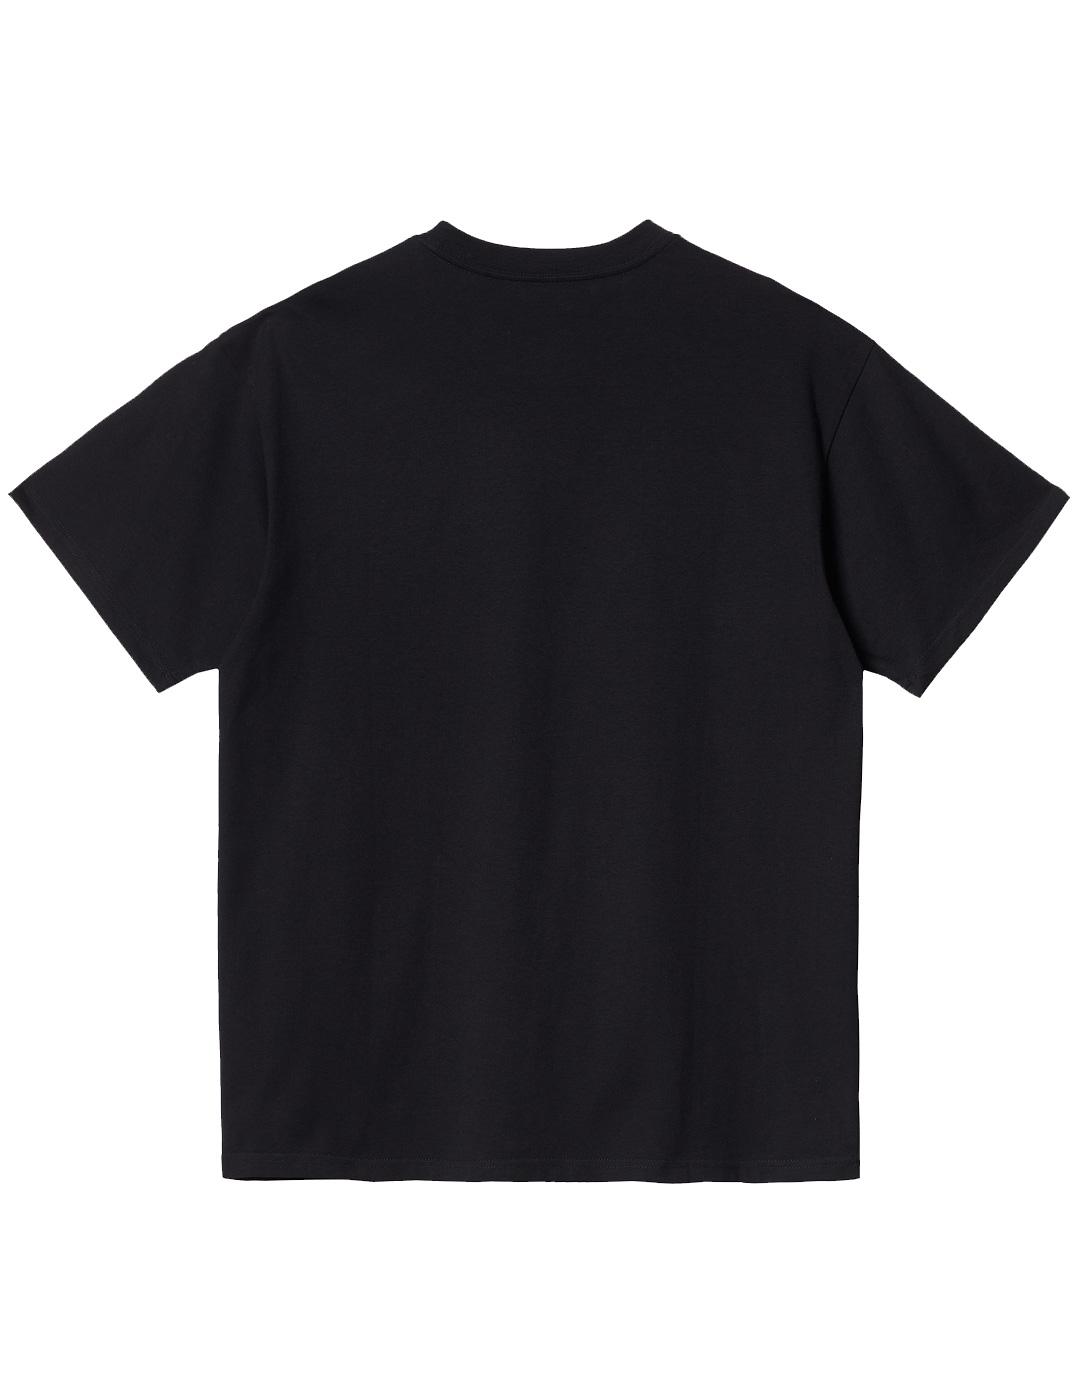 T-Shirt Carhartt Wip Script Embroidery Noir